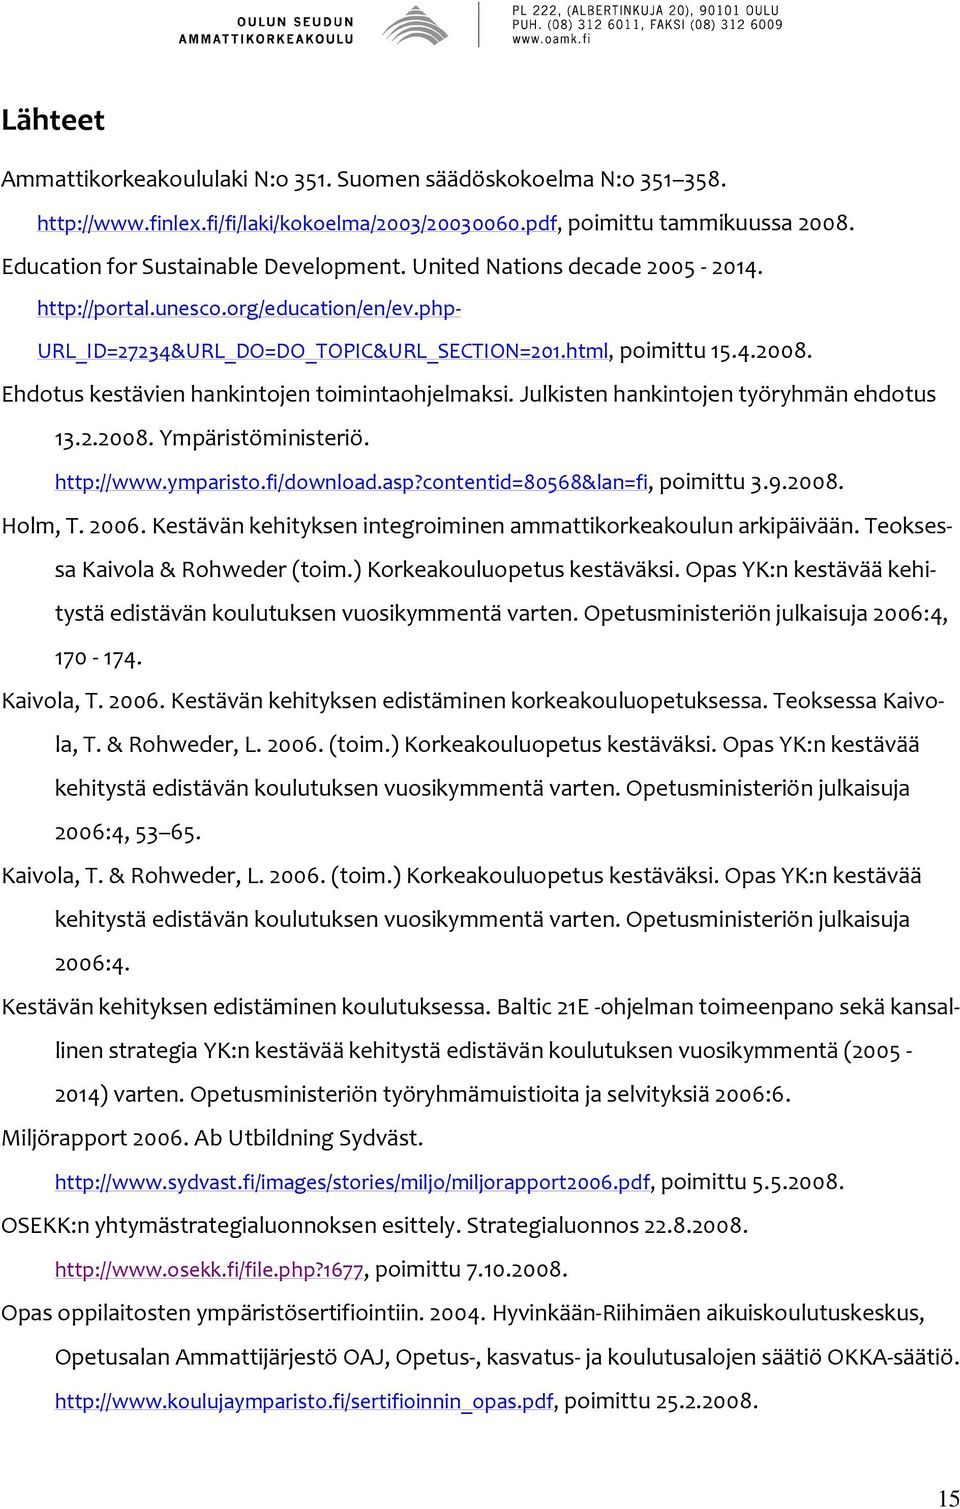 Julkisten hankintojen työryhmän ehdotus 13.2.2008. Ympäristöministeriö. http://www.ymparisto.fi/download.asp?contentid=80568&lan=fi, poimittu 3.9.2008. Holm, T. 2006.